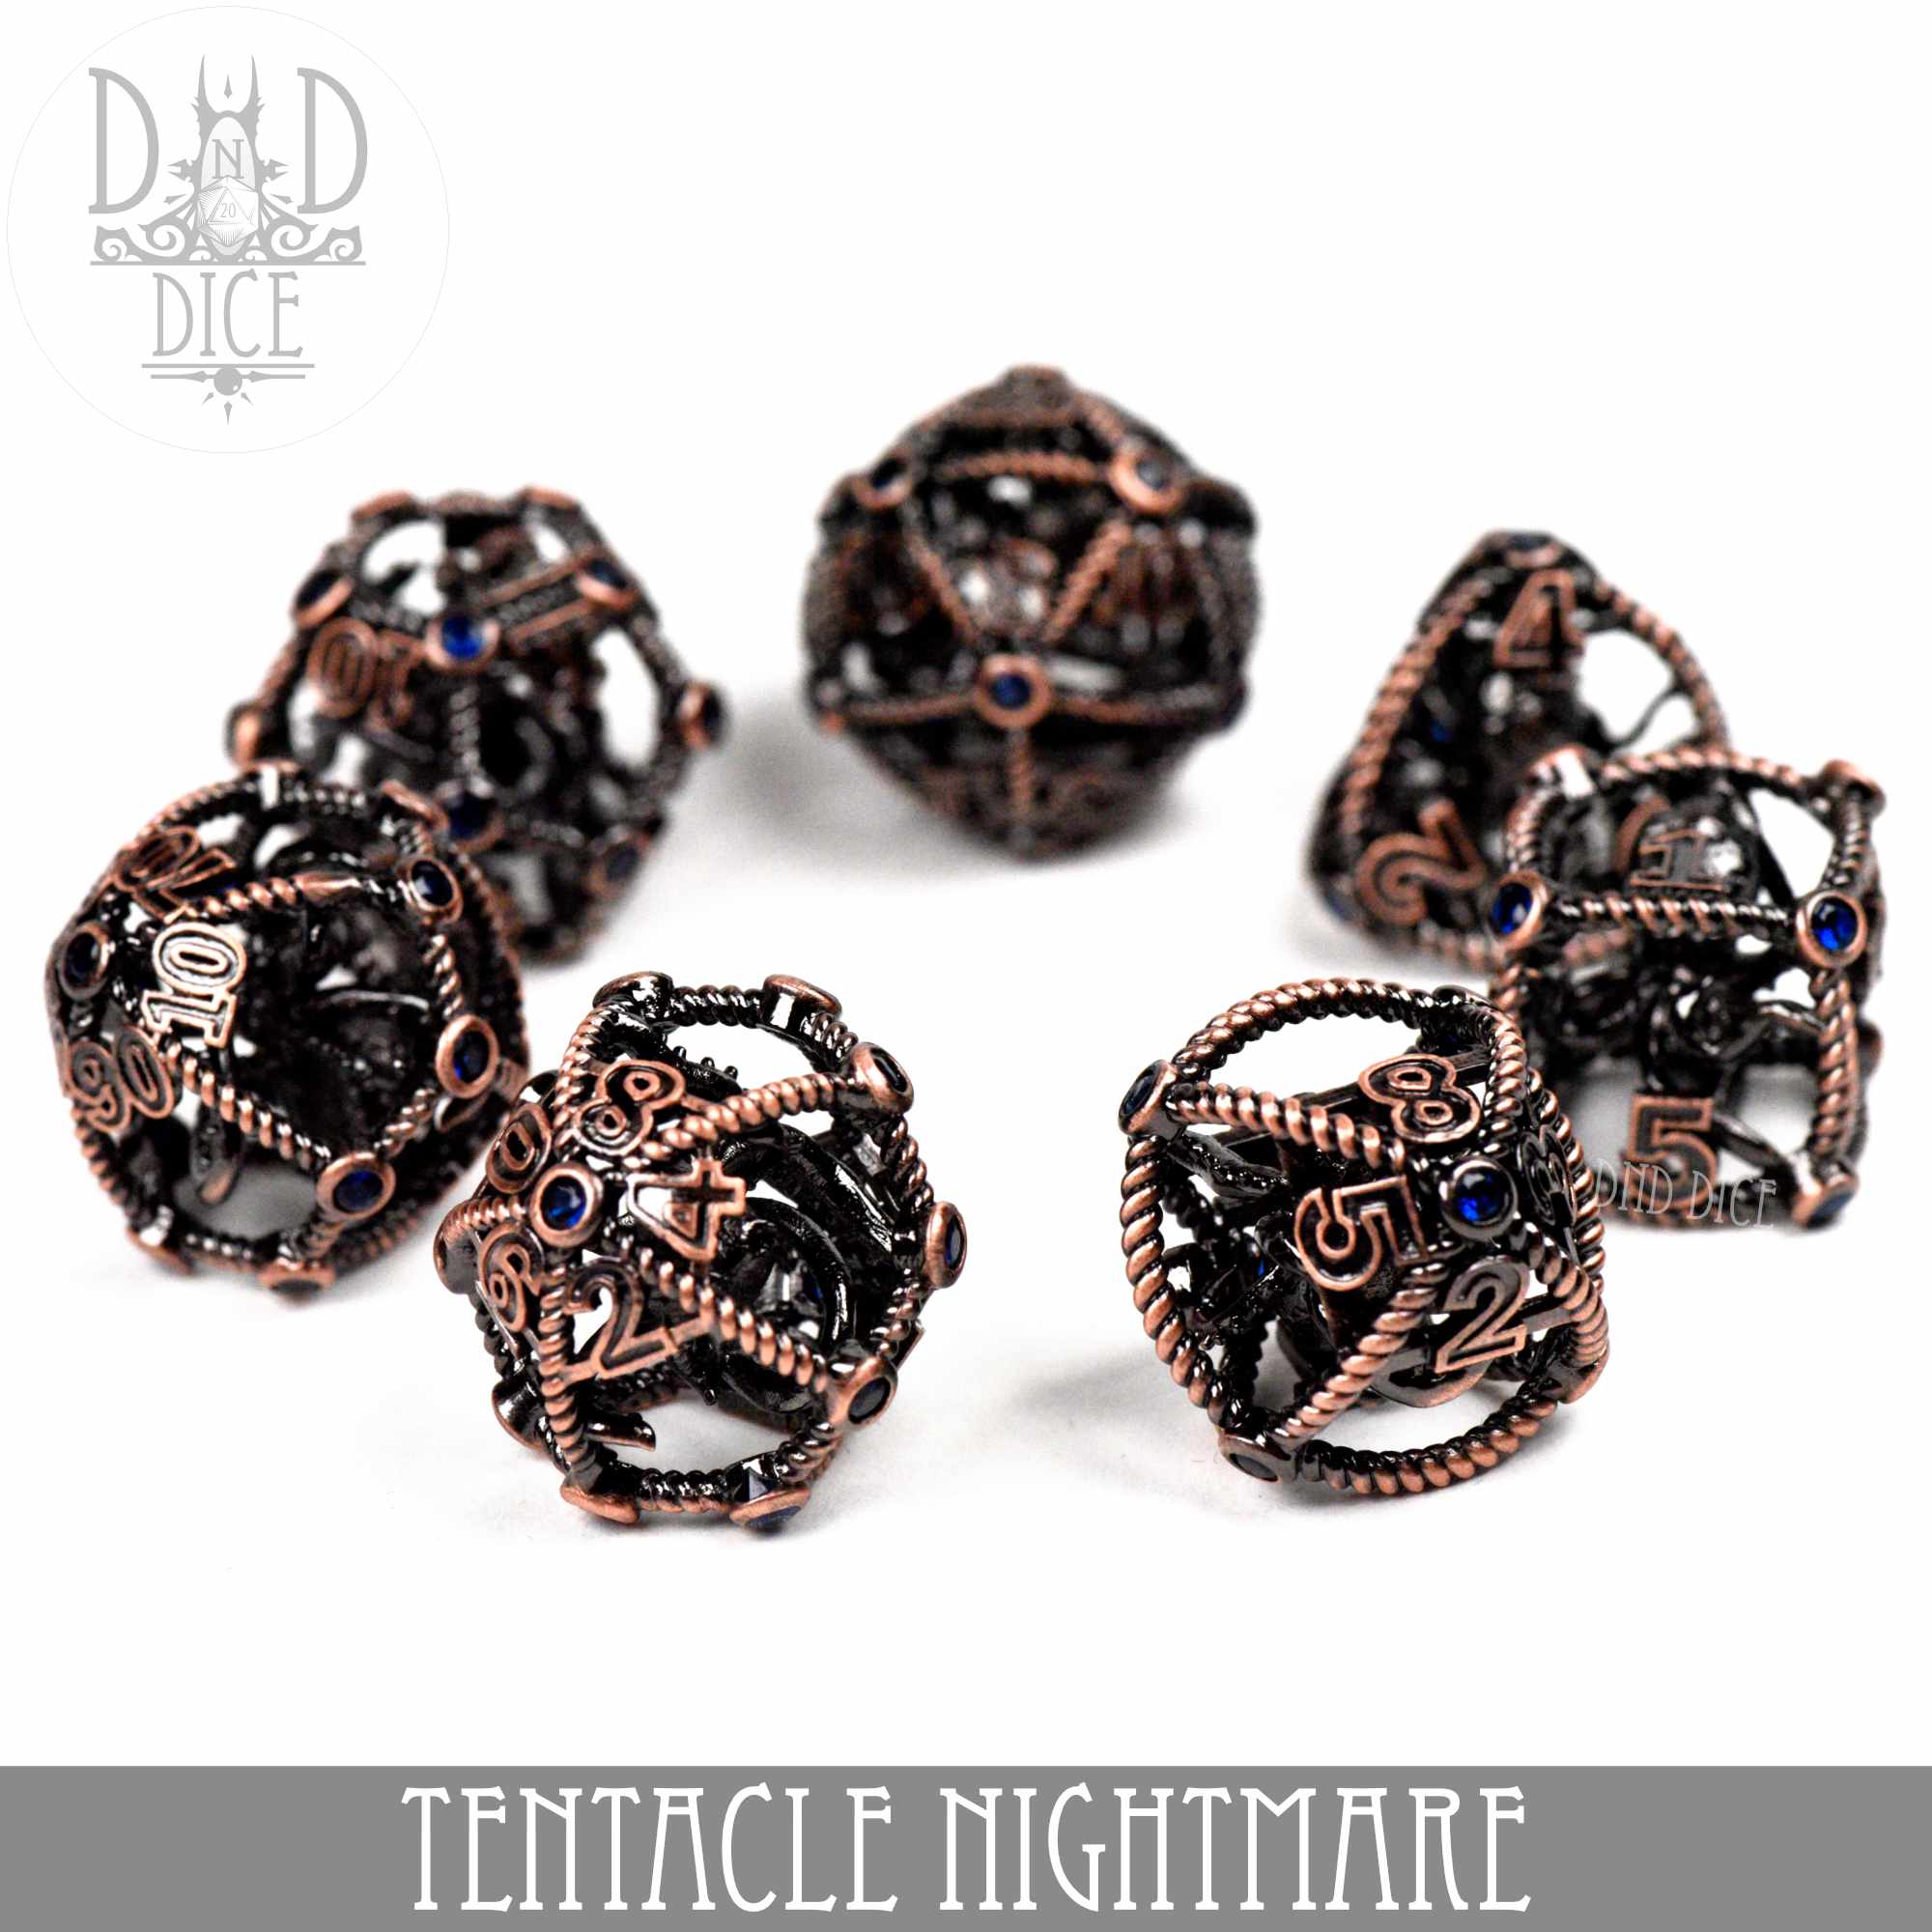 Tentacle Nightmare Metal Dice Set (Gift Box)